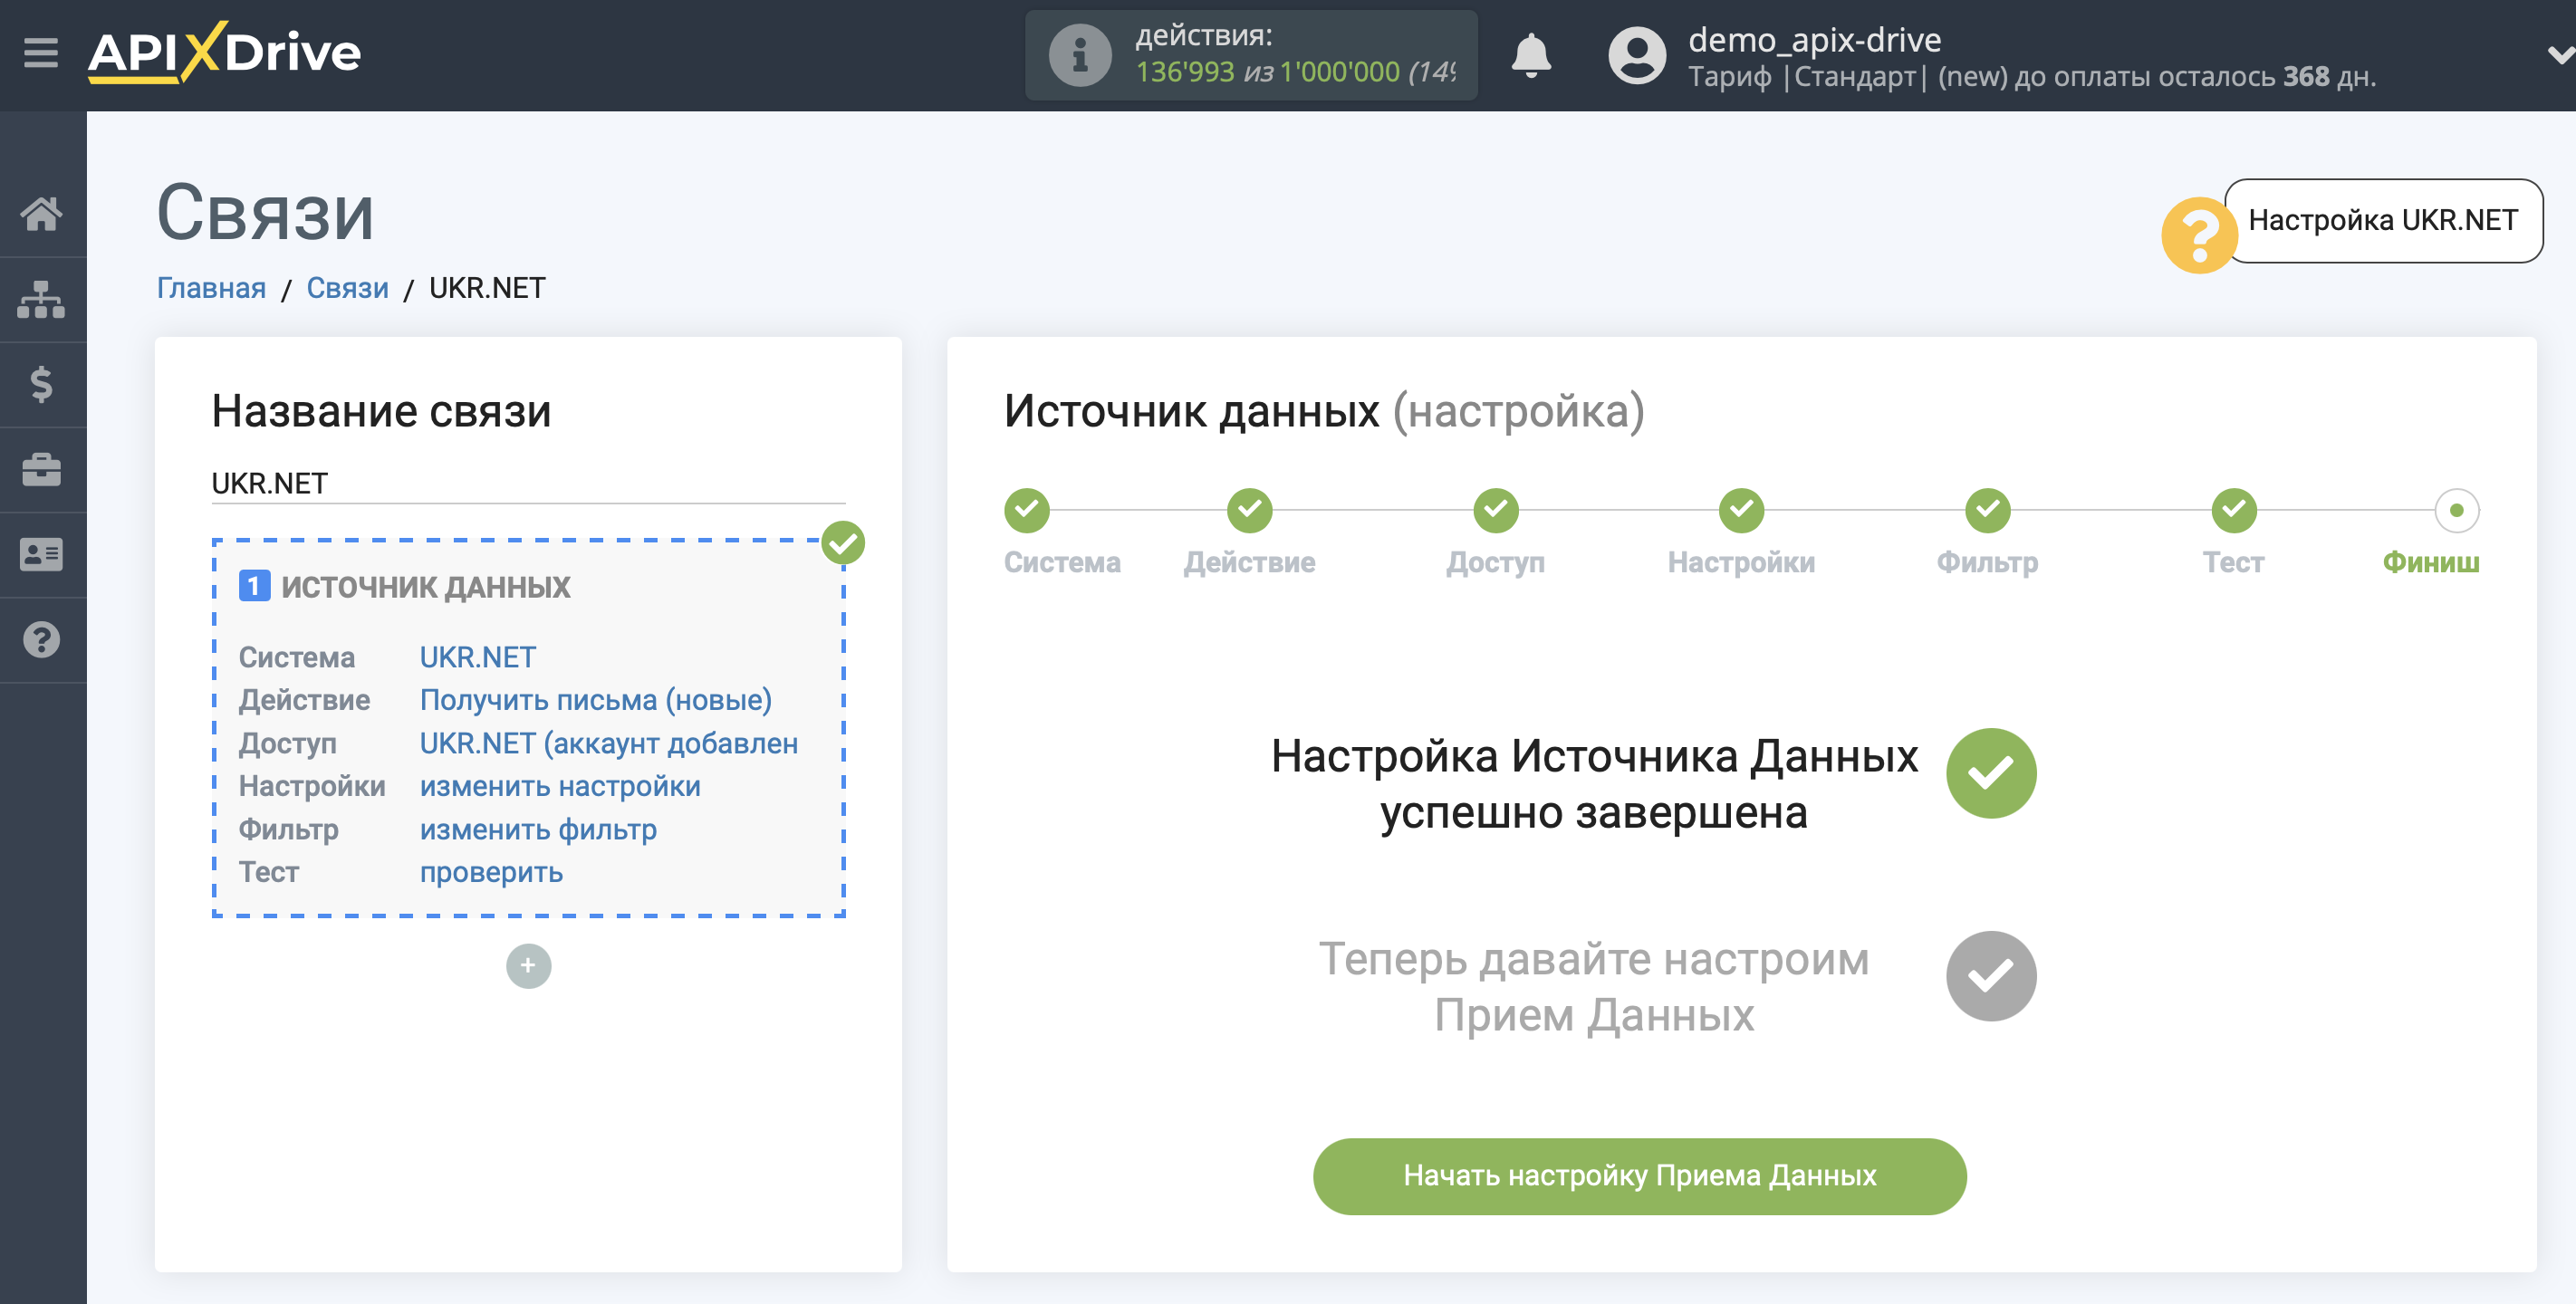 Настройка UKR.NET | Переход к настройке приема данных